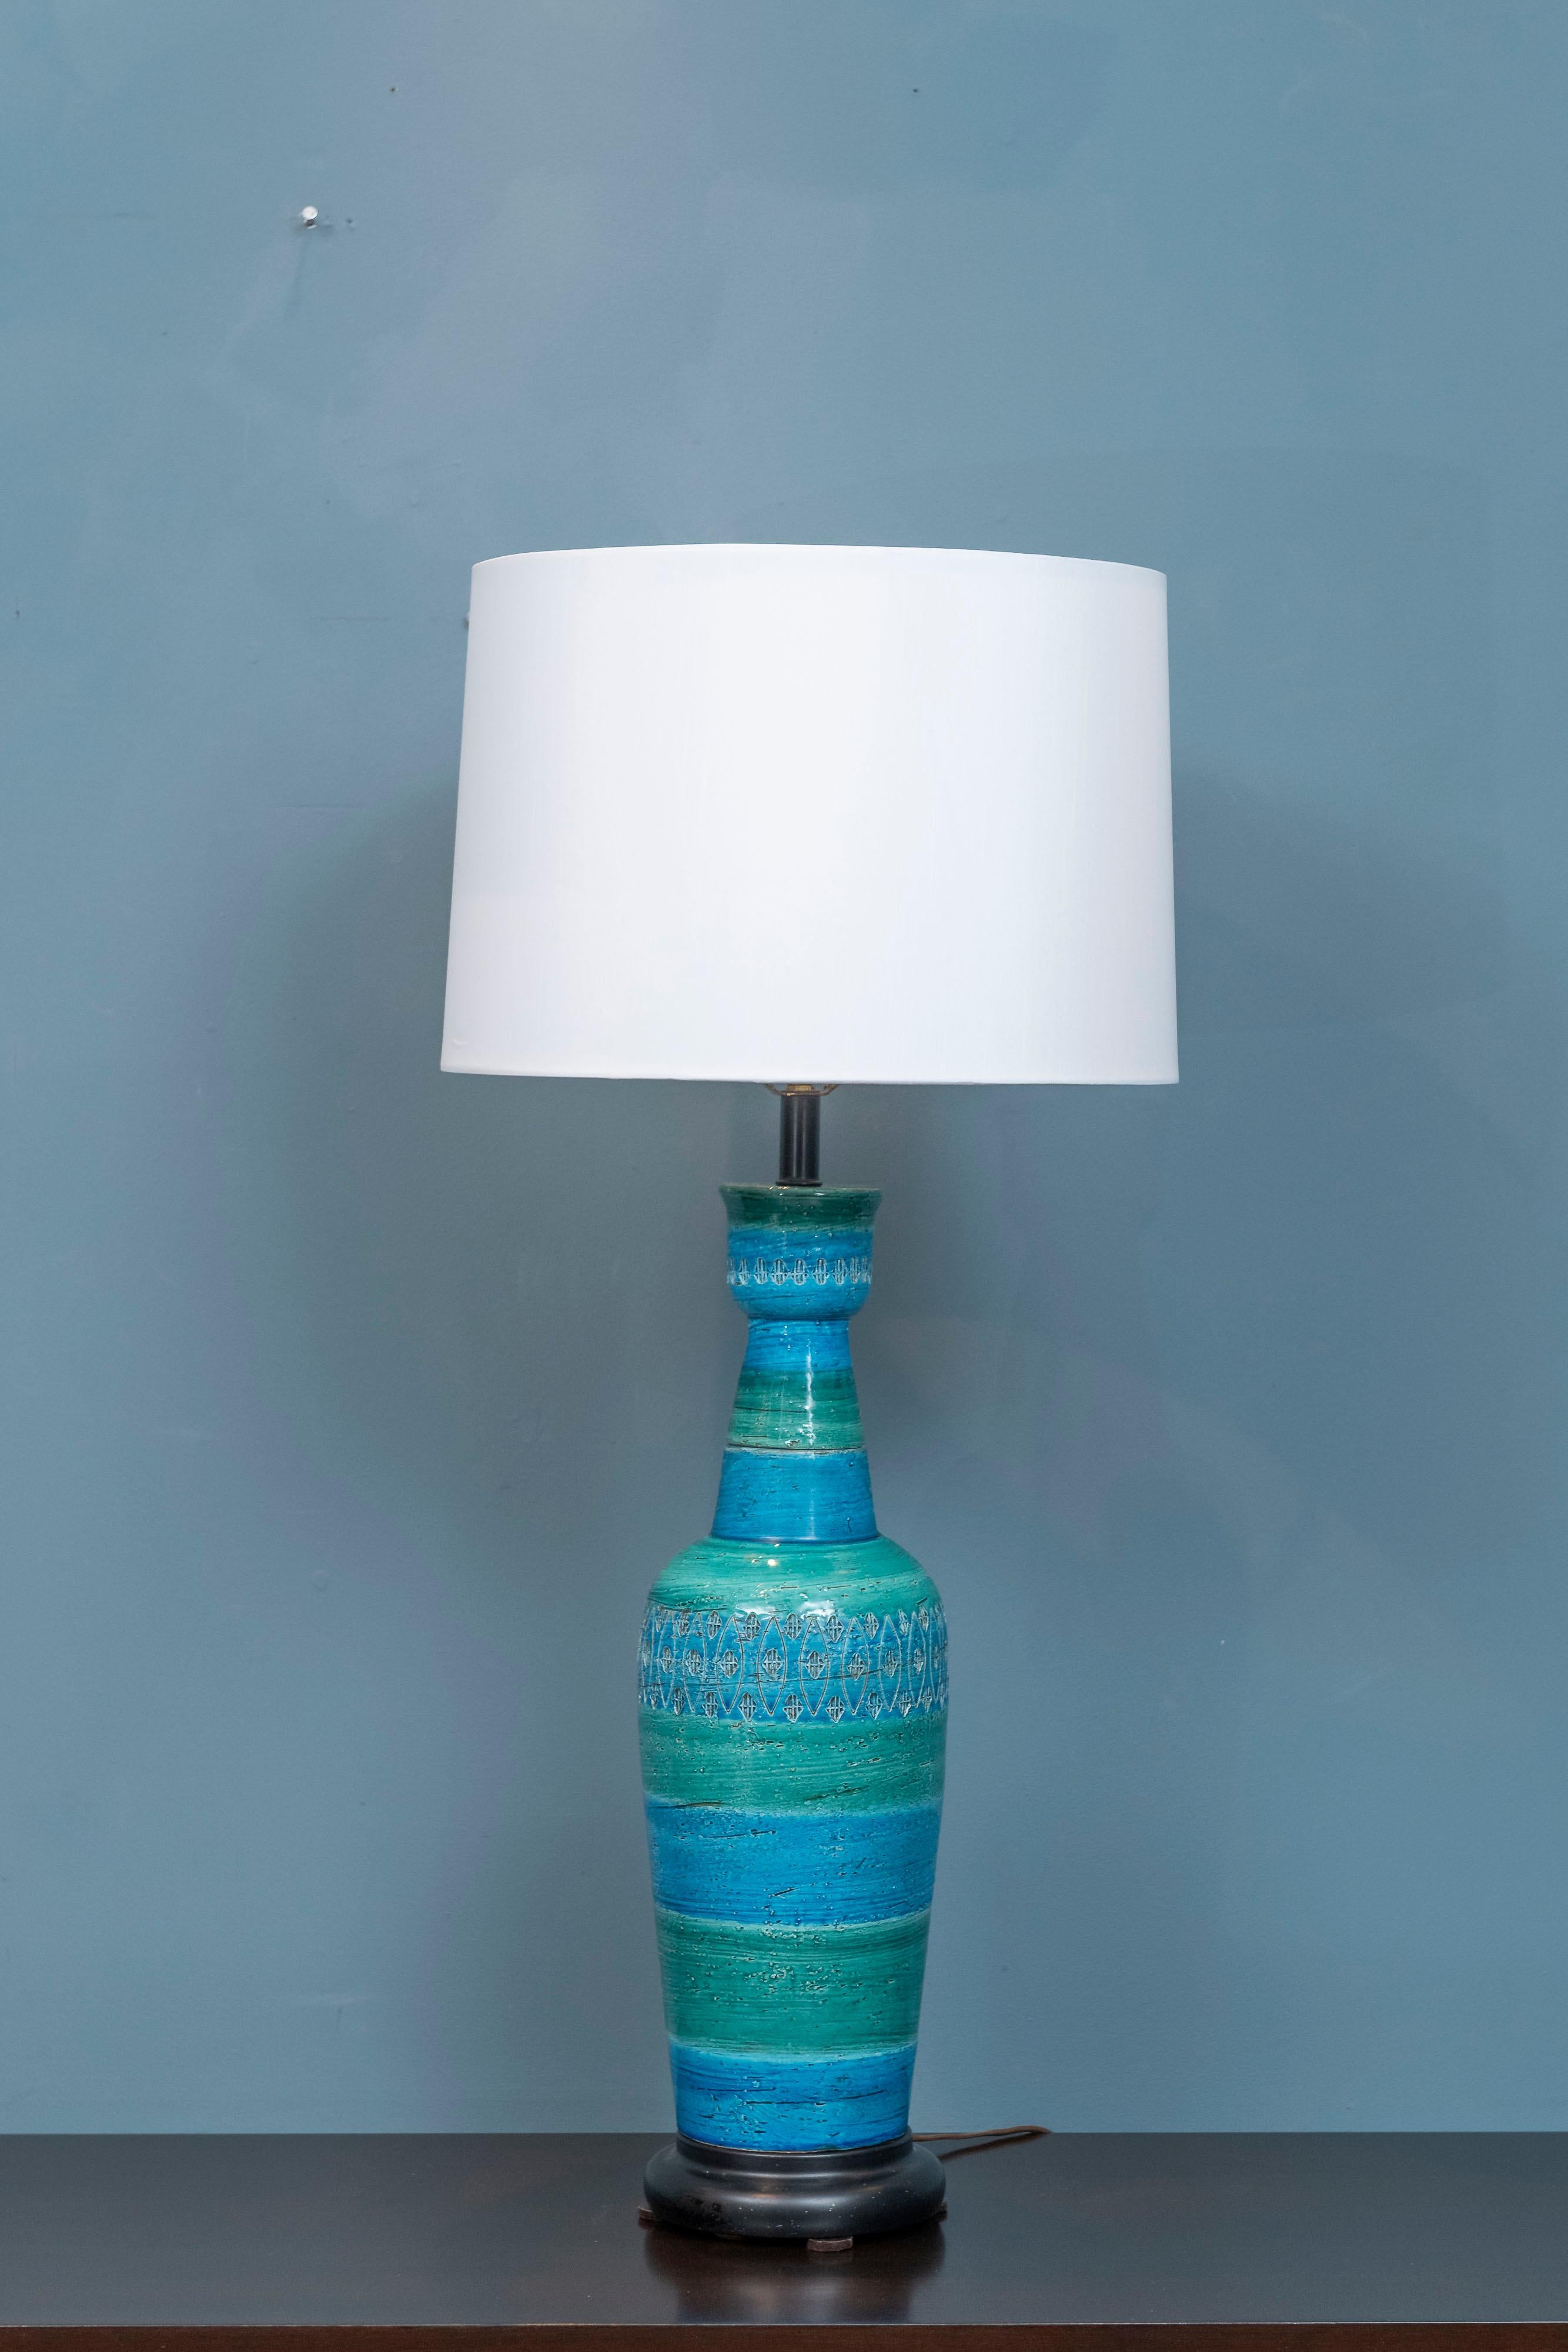 Bitossi Aldo Londi Keramik-Lampe mit eingeschlossenen Dekoration in der Mitte und oben in Rimini blau und Ozean grün Farben. Klassischer Formkörper, der in Person in sehr gutem Originalzustand beeindruckend ist. Lampenfuß weist einige Schrammen auf